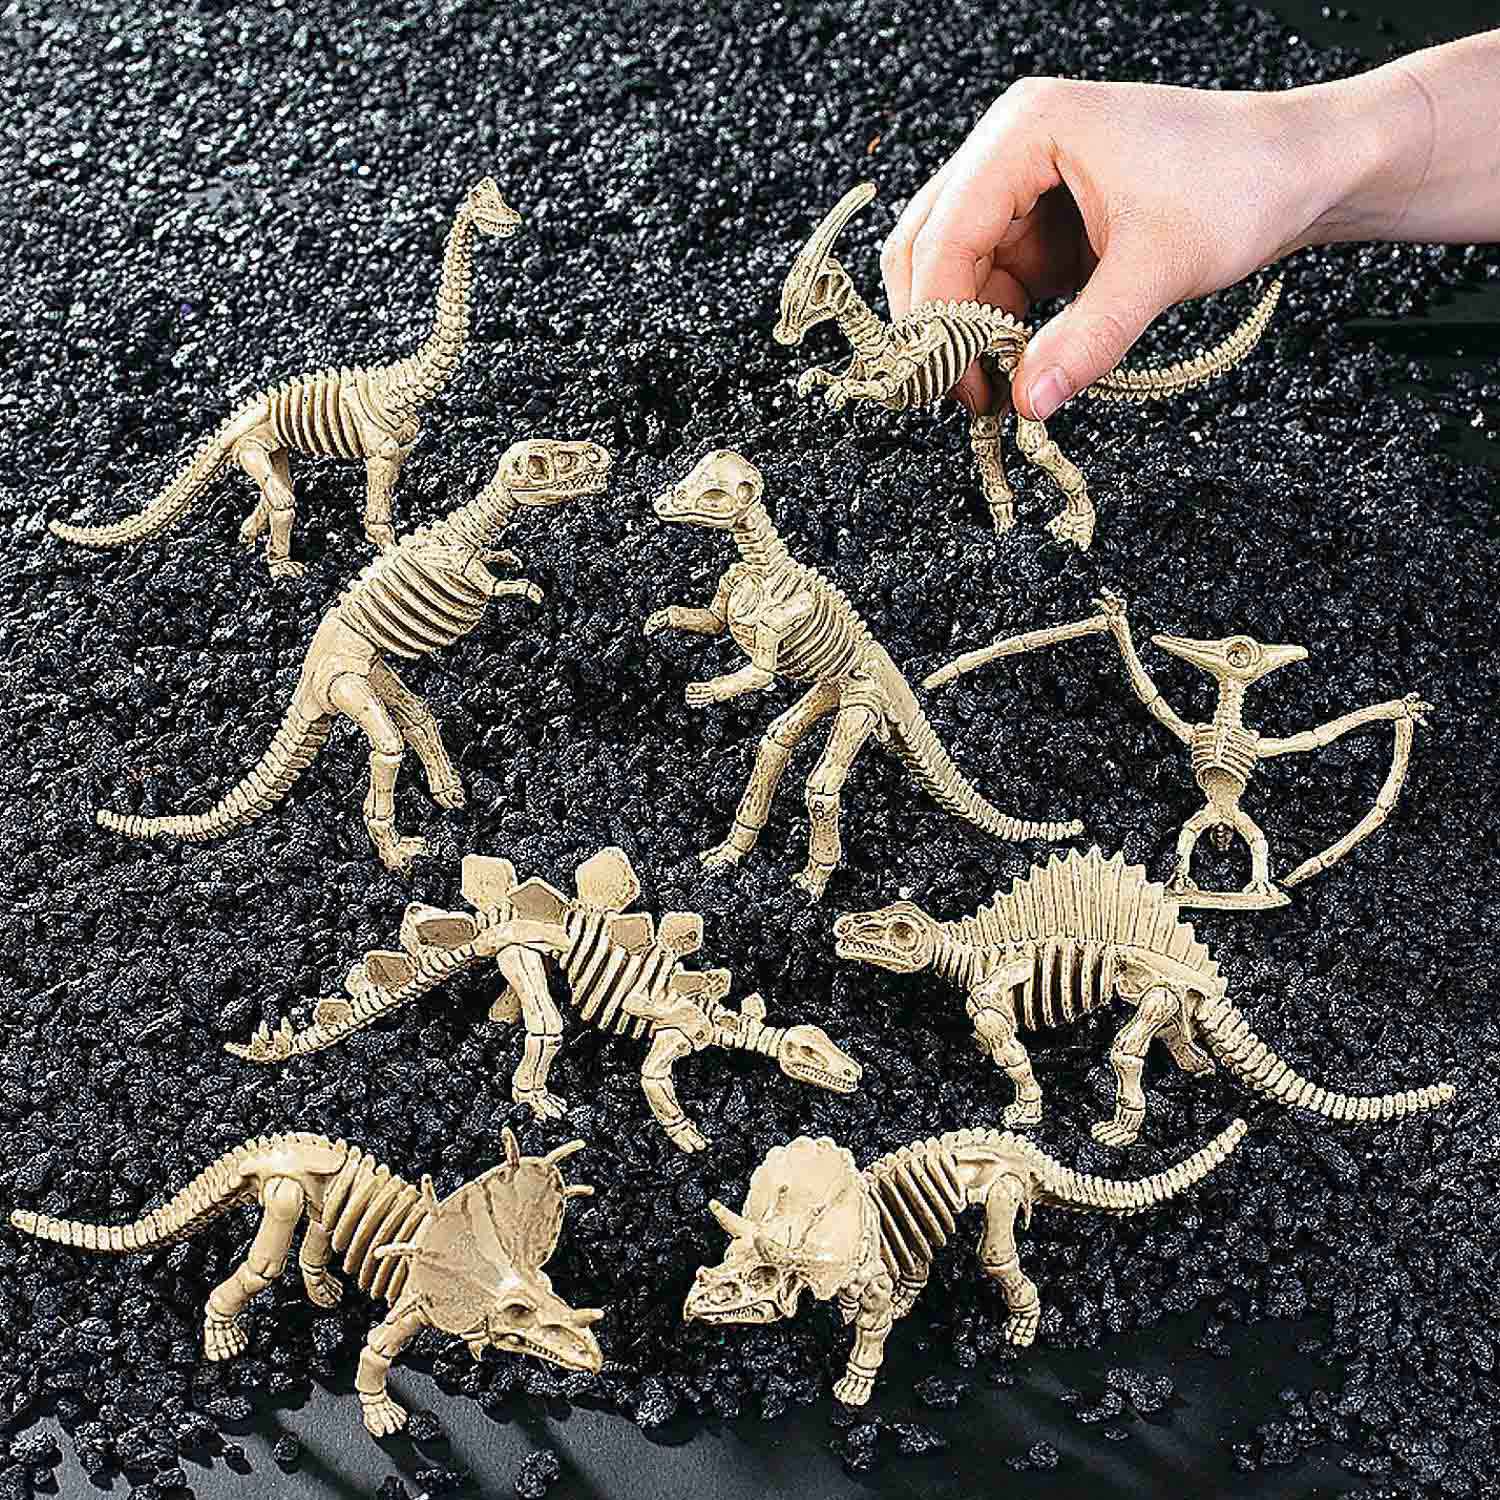 Dino-Mite Dinosaur Skeletons